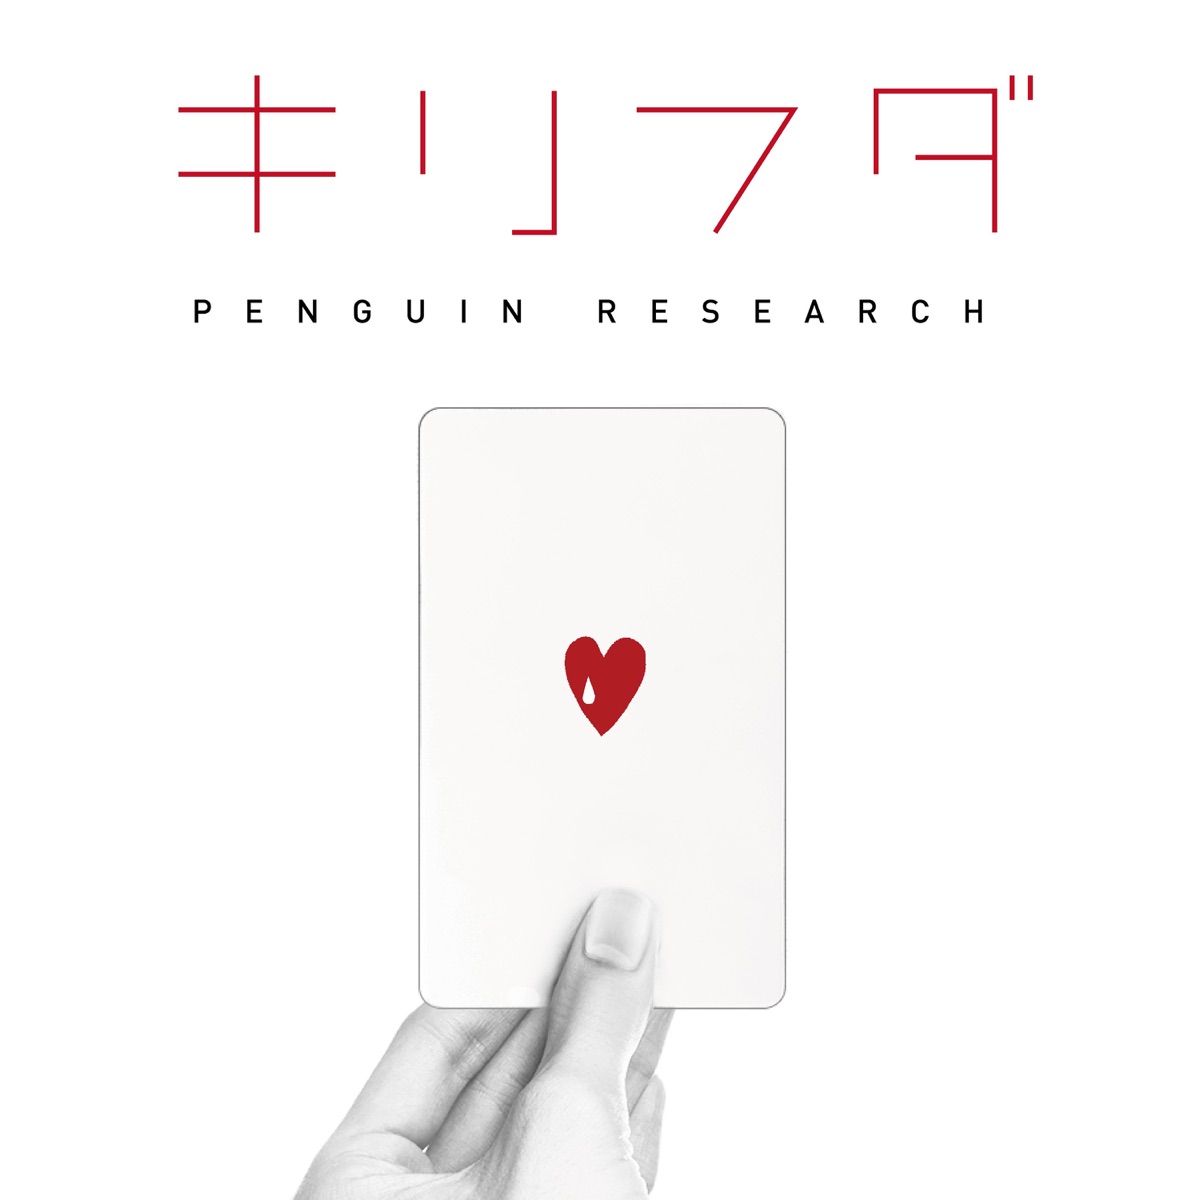 Cover art for『PENGUIN RESEARCH - Kirifuda』from the release『Kirifuda』